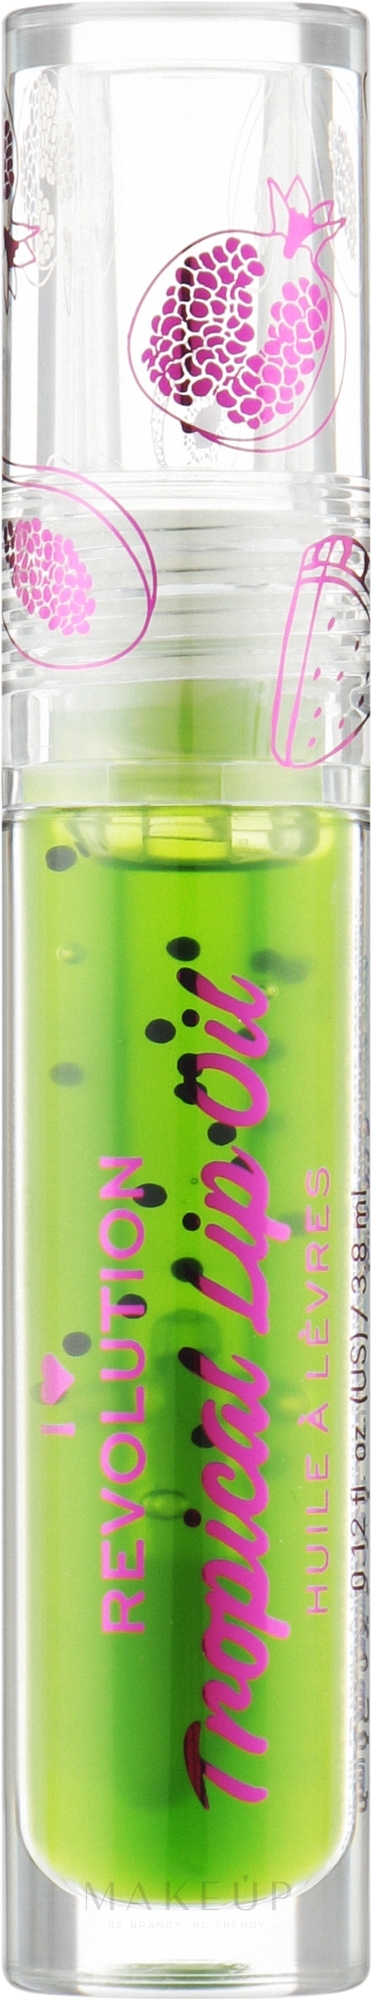 Tropisches Lippenöl Kiwi - I Heart Revolution Tasty Tropical Lip Oil Kiwi — Bild 3.8 ml